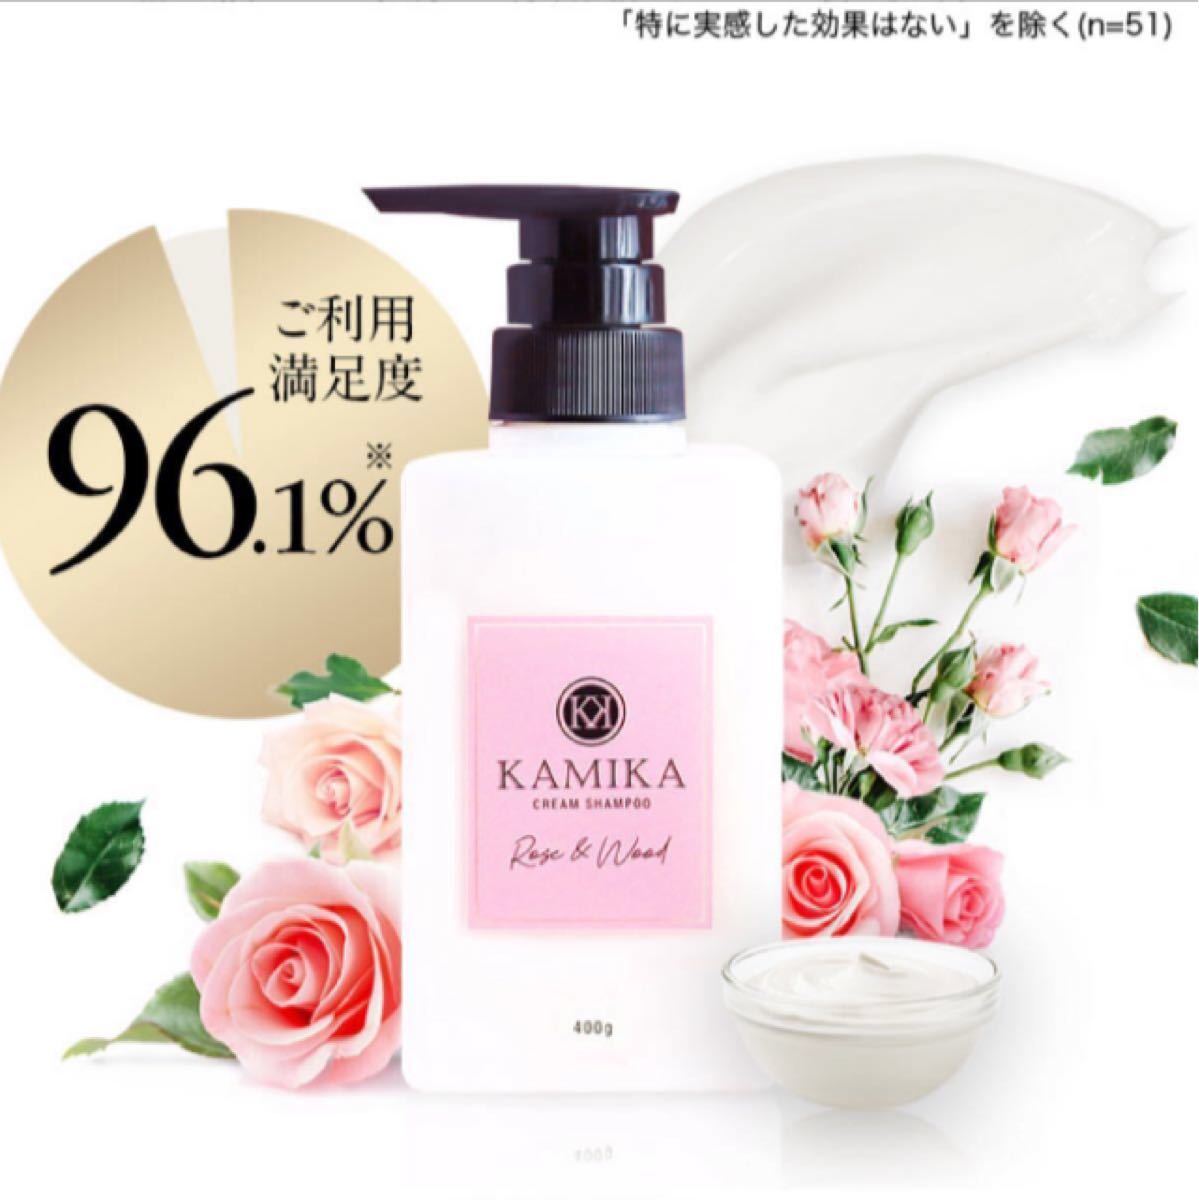 KAMIKA カミカ シャンプー【限定香りローズ&ウッド】400g